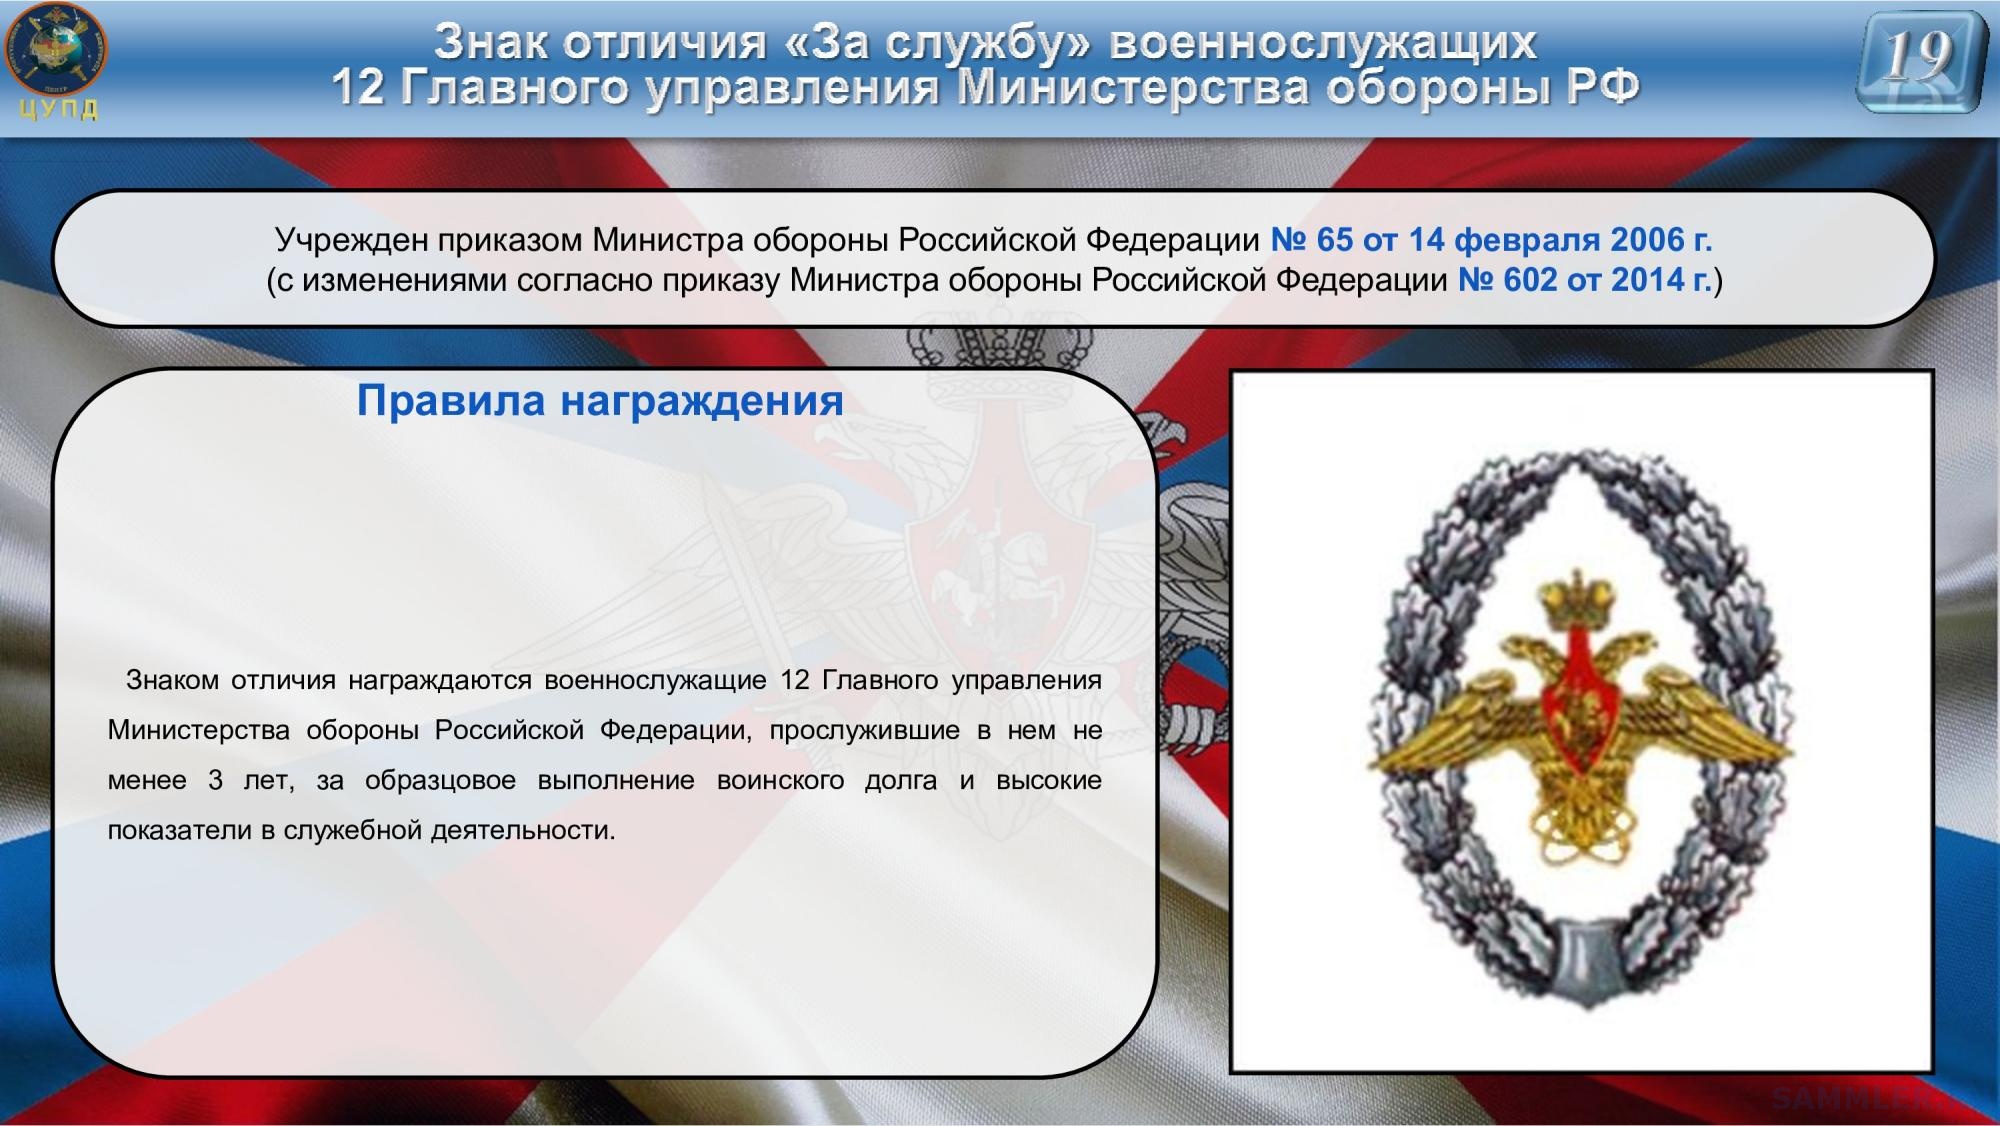 Сайт министерства мо. Правовой Департамент Министерства обороны Российской Федерации.